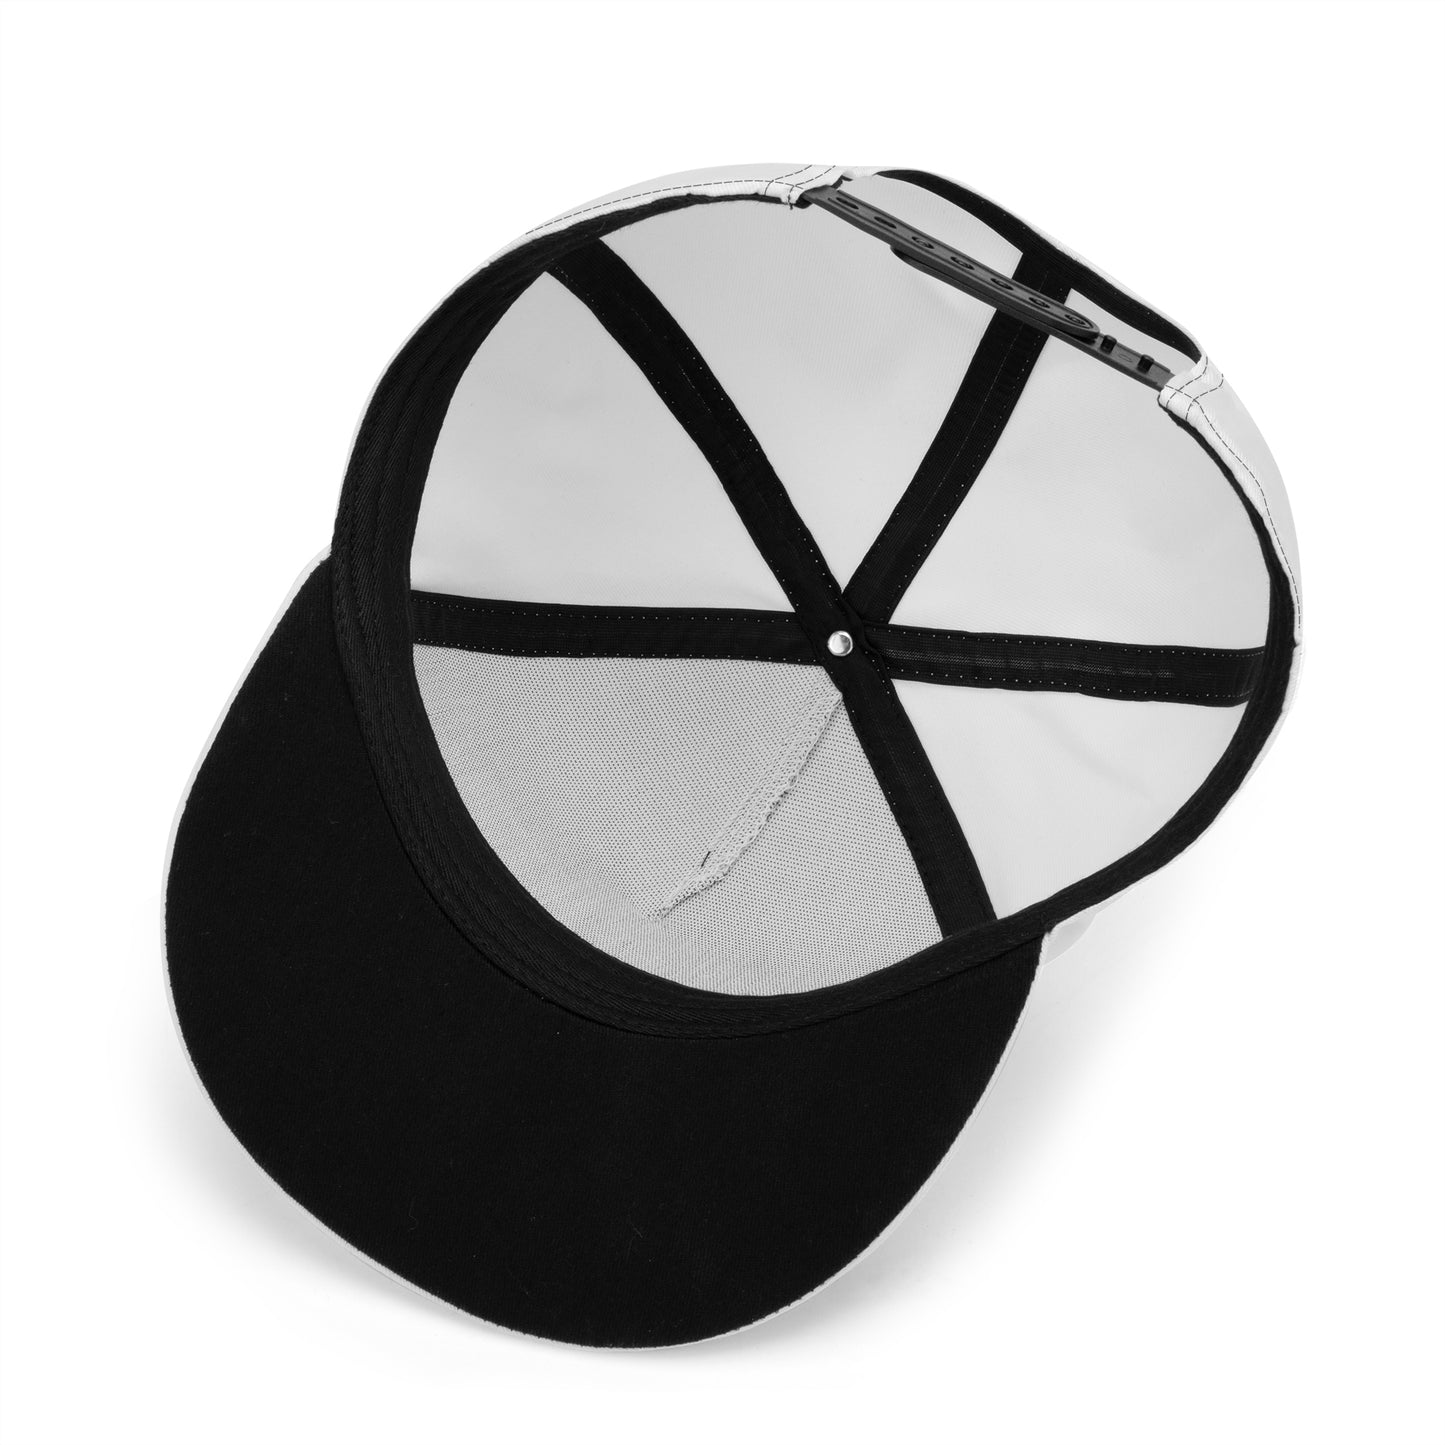 T4x Its A DC, MD, VA Thing Hat